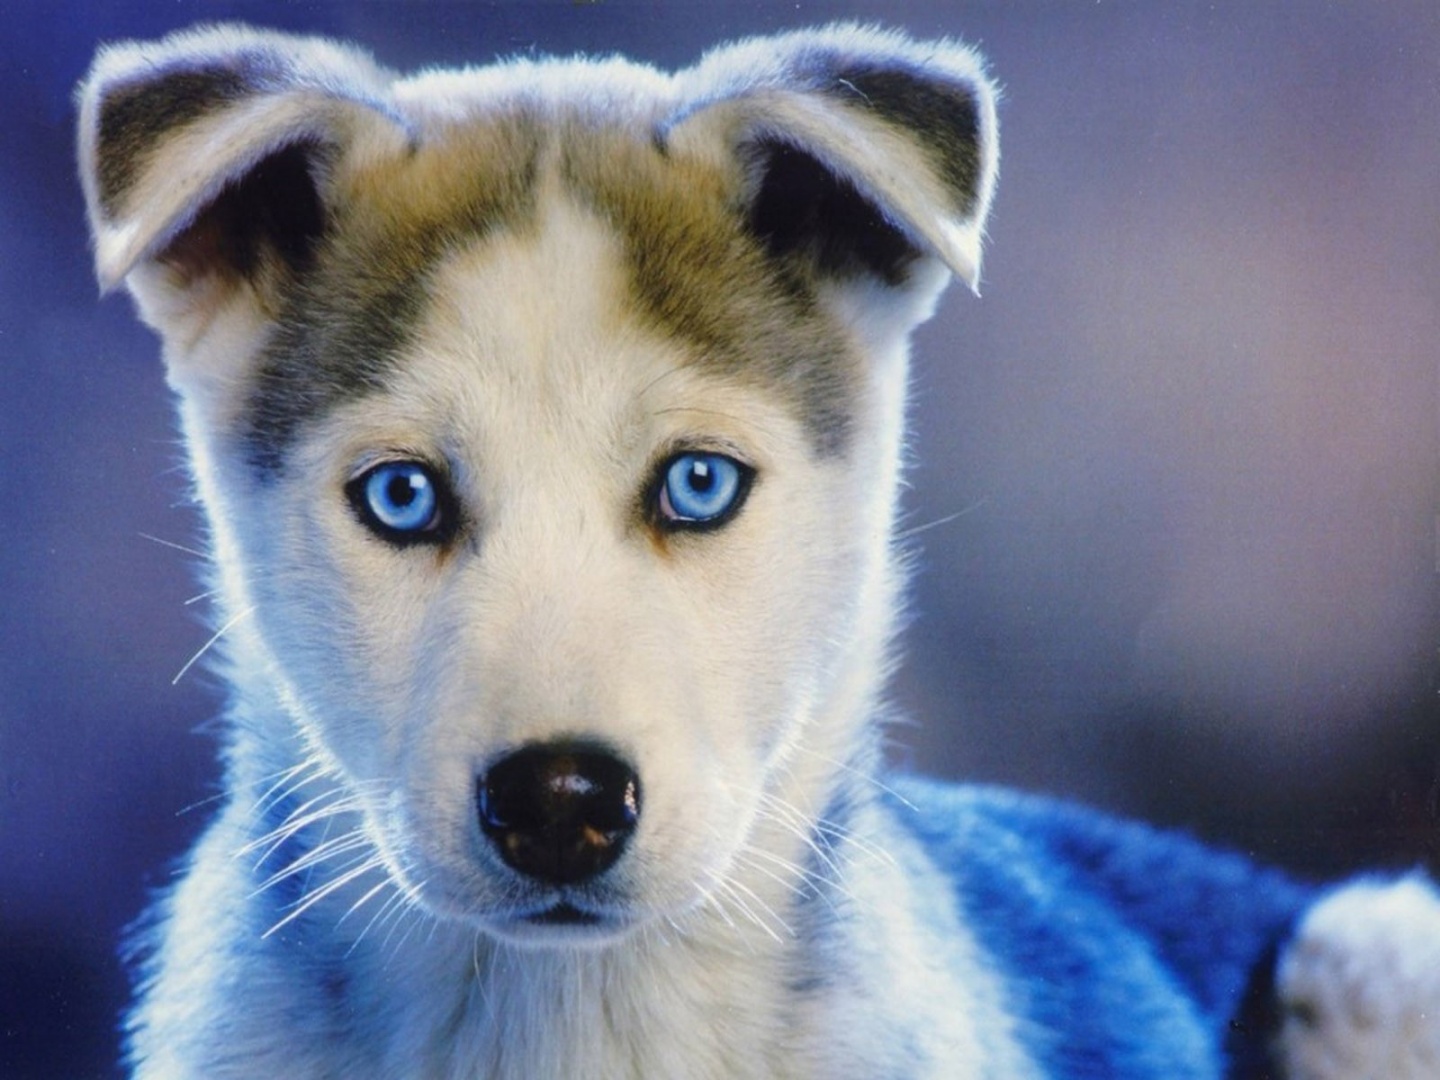 Husky Puppies Wallpapers - 1440x1080 - 353224